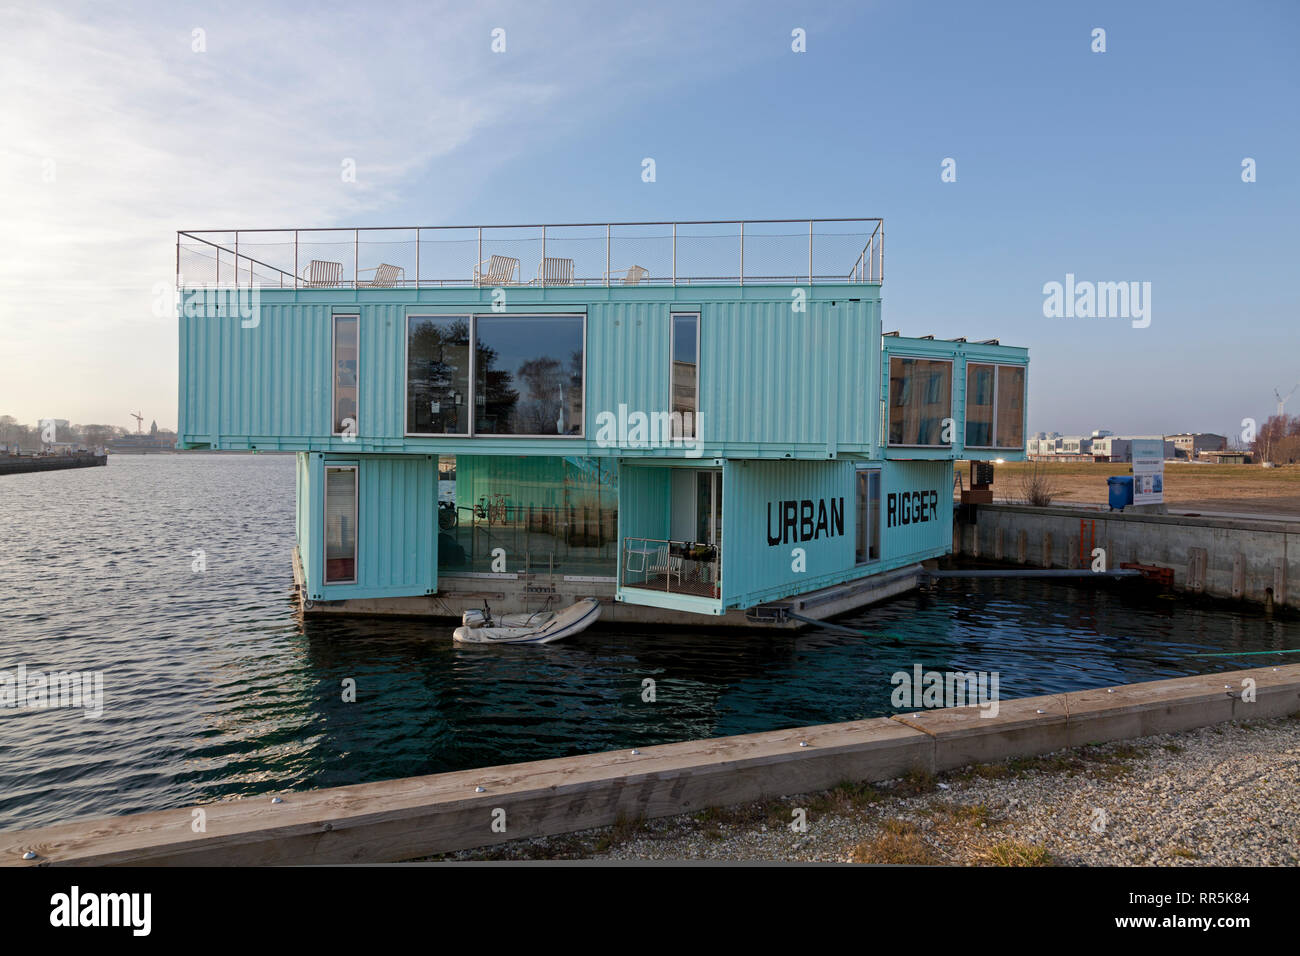 Urban Rigger, flottant, flexible CO2 neutre propriétaire occupé logement étudiant, Refshaleøen, dans le port de Copenhague, Danemark, architecte Bjarke Ingels Banque D'Images